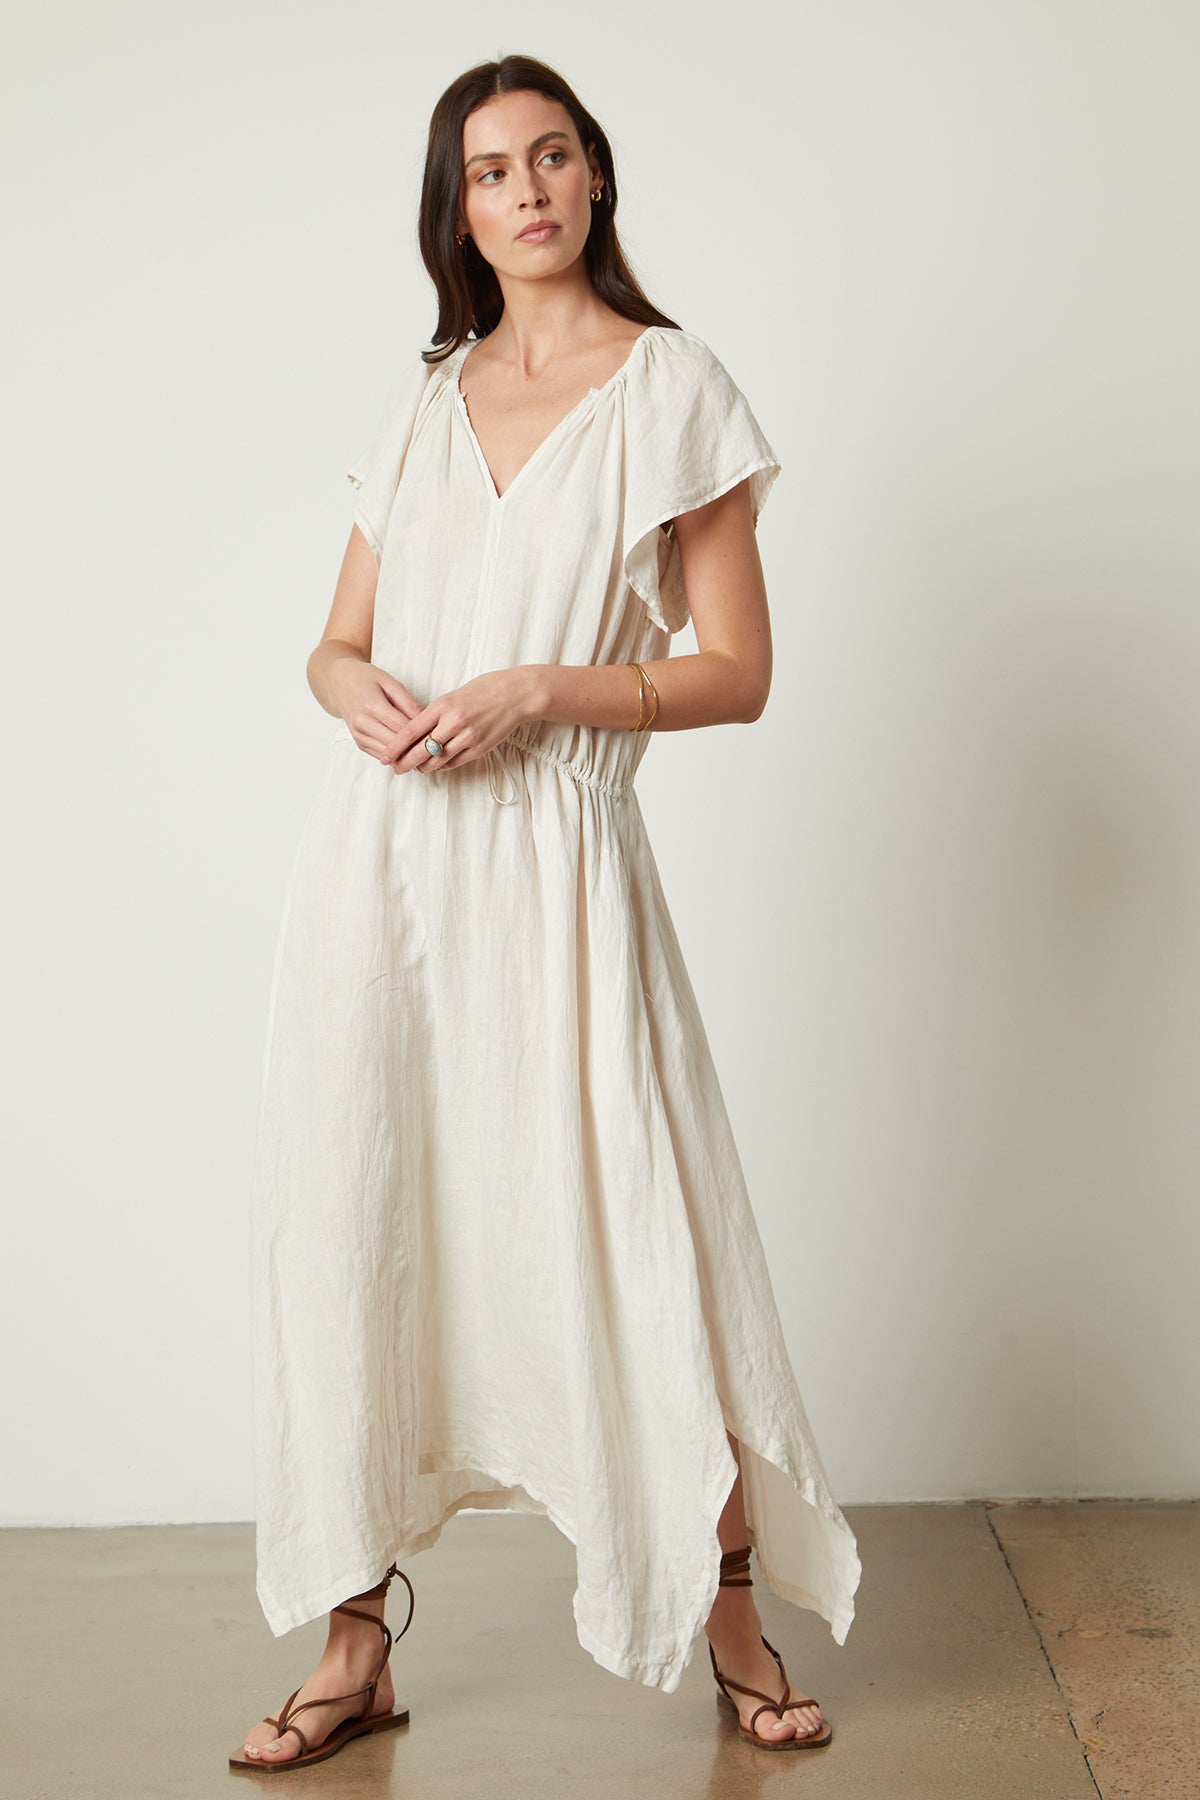 Debbie Linen Dress in cream full length front-26143134417089